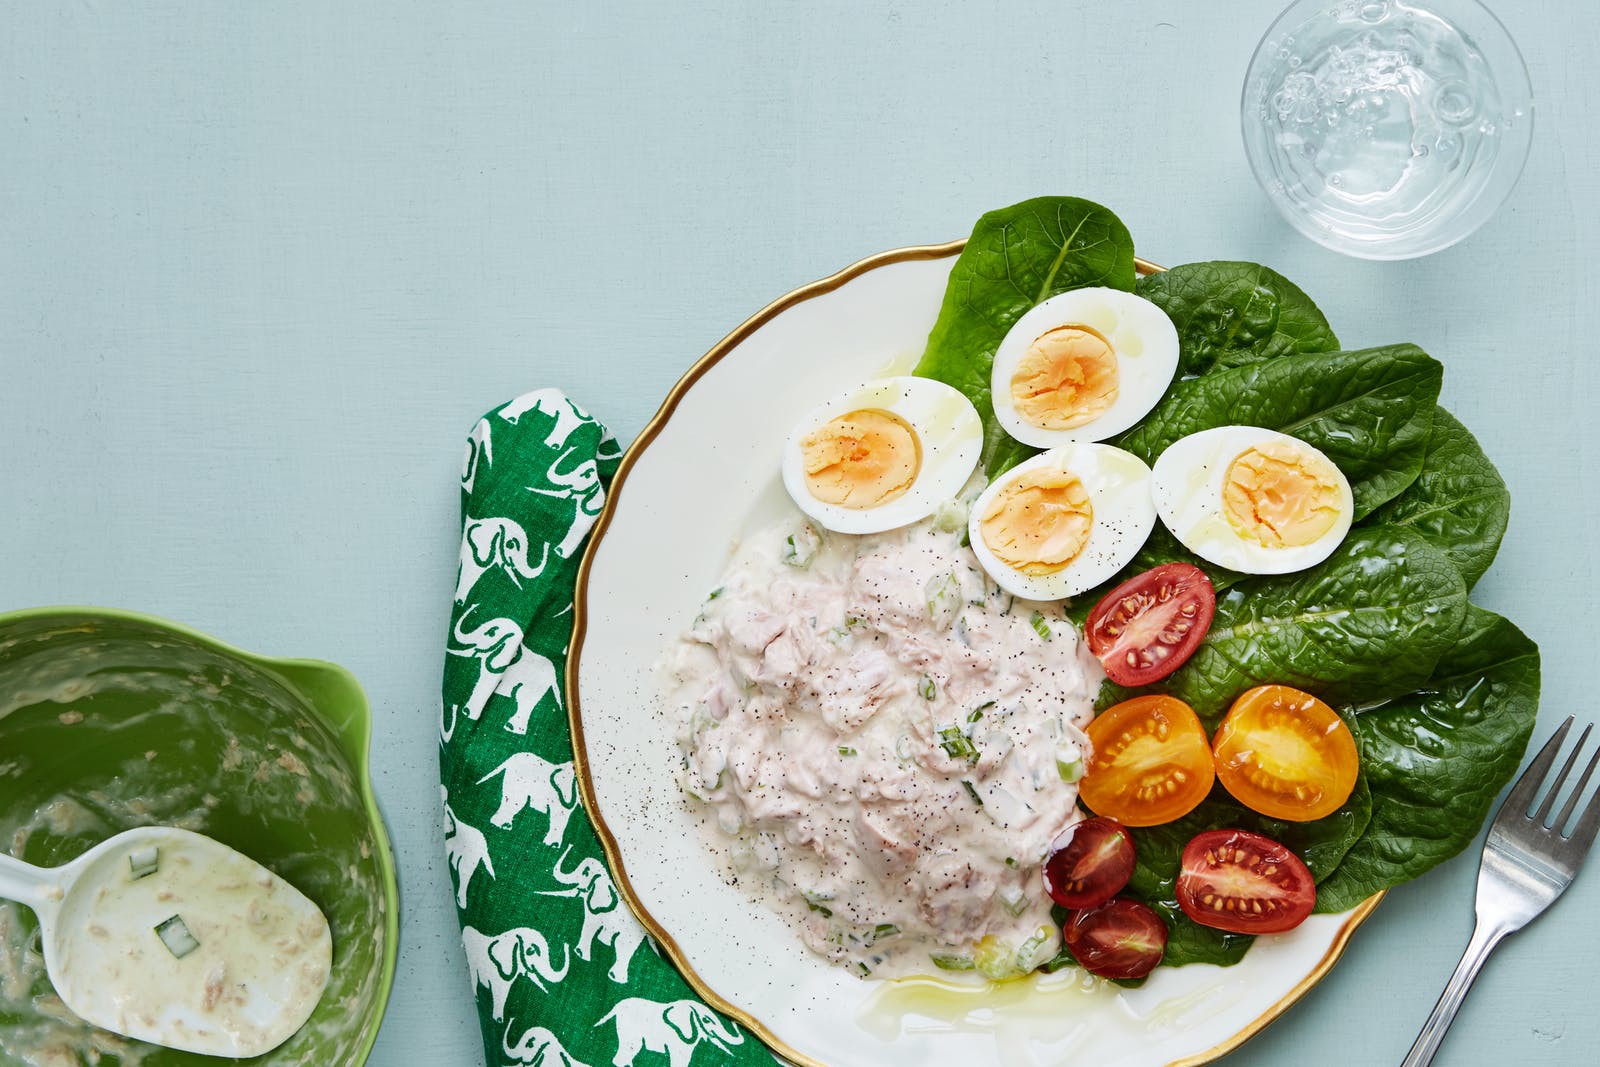 Học ngay cách làm 3 món salad ngon tuyệt cho bữa trưa Keto của bạn - Ảnh 3.